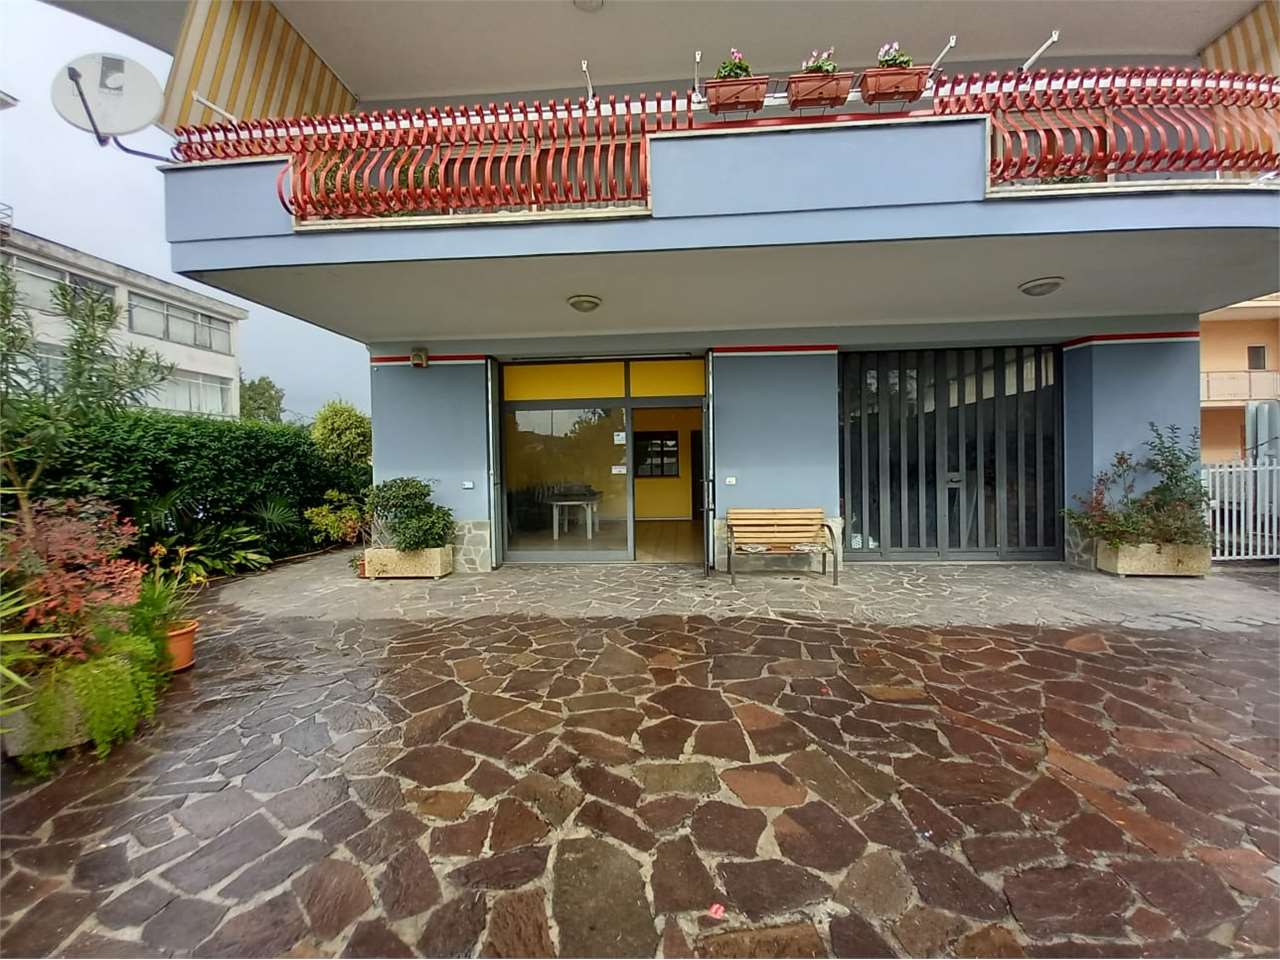 Negozio / Locale in affitto a Ferentino, 2 locali, prezzo € 600 | PortaleAgenzieImmobiliari.it